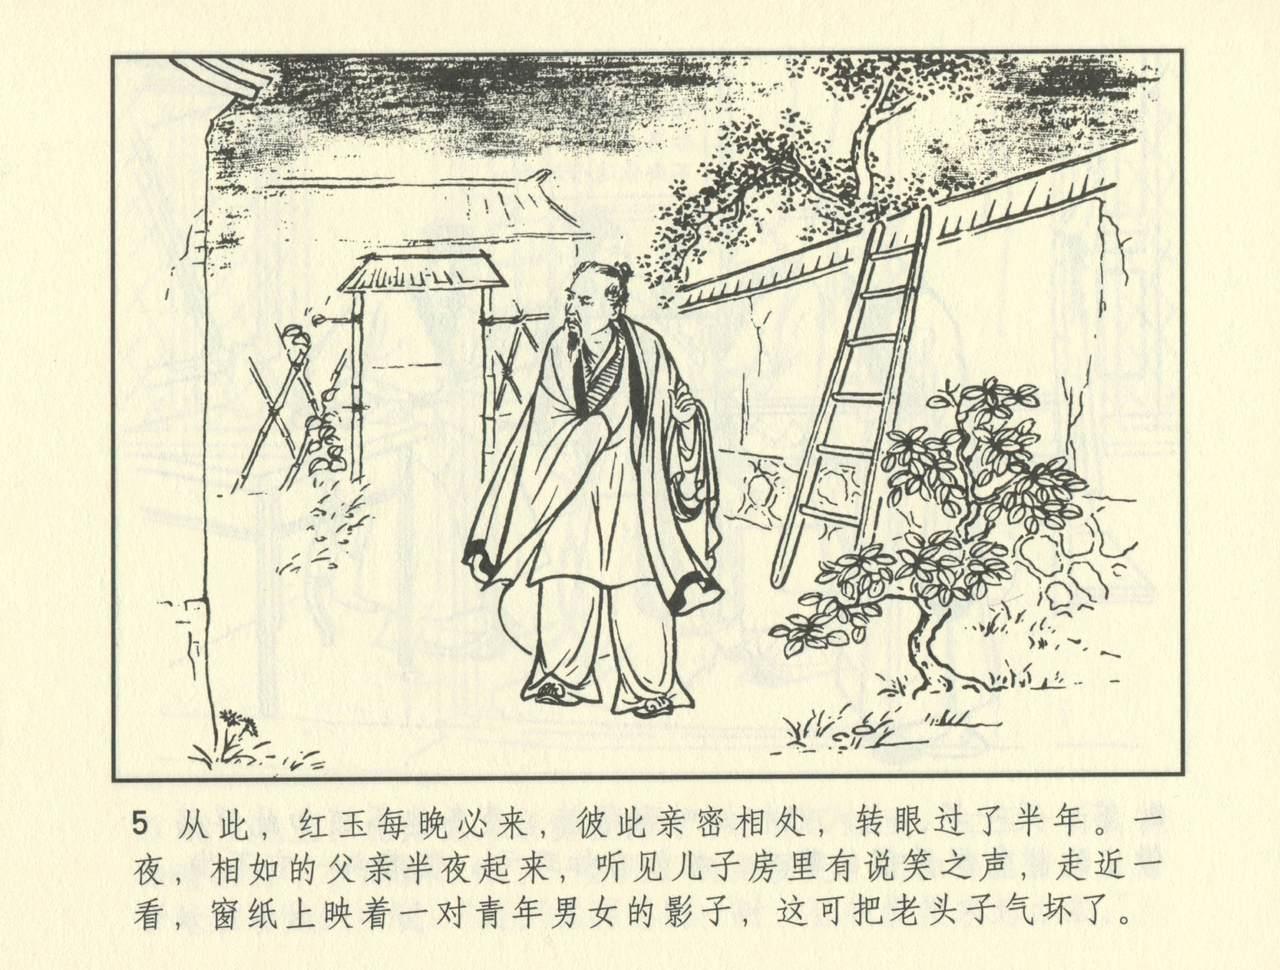 聊斋志异 张玮等绘 天津人民美术出版社 卷二十一 ~ 三十 345